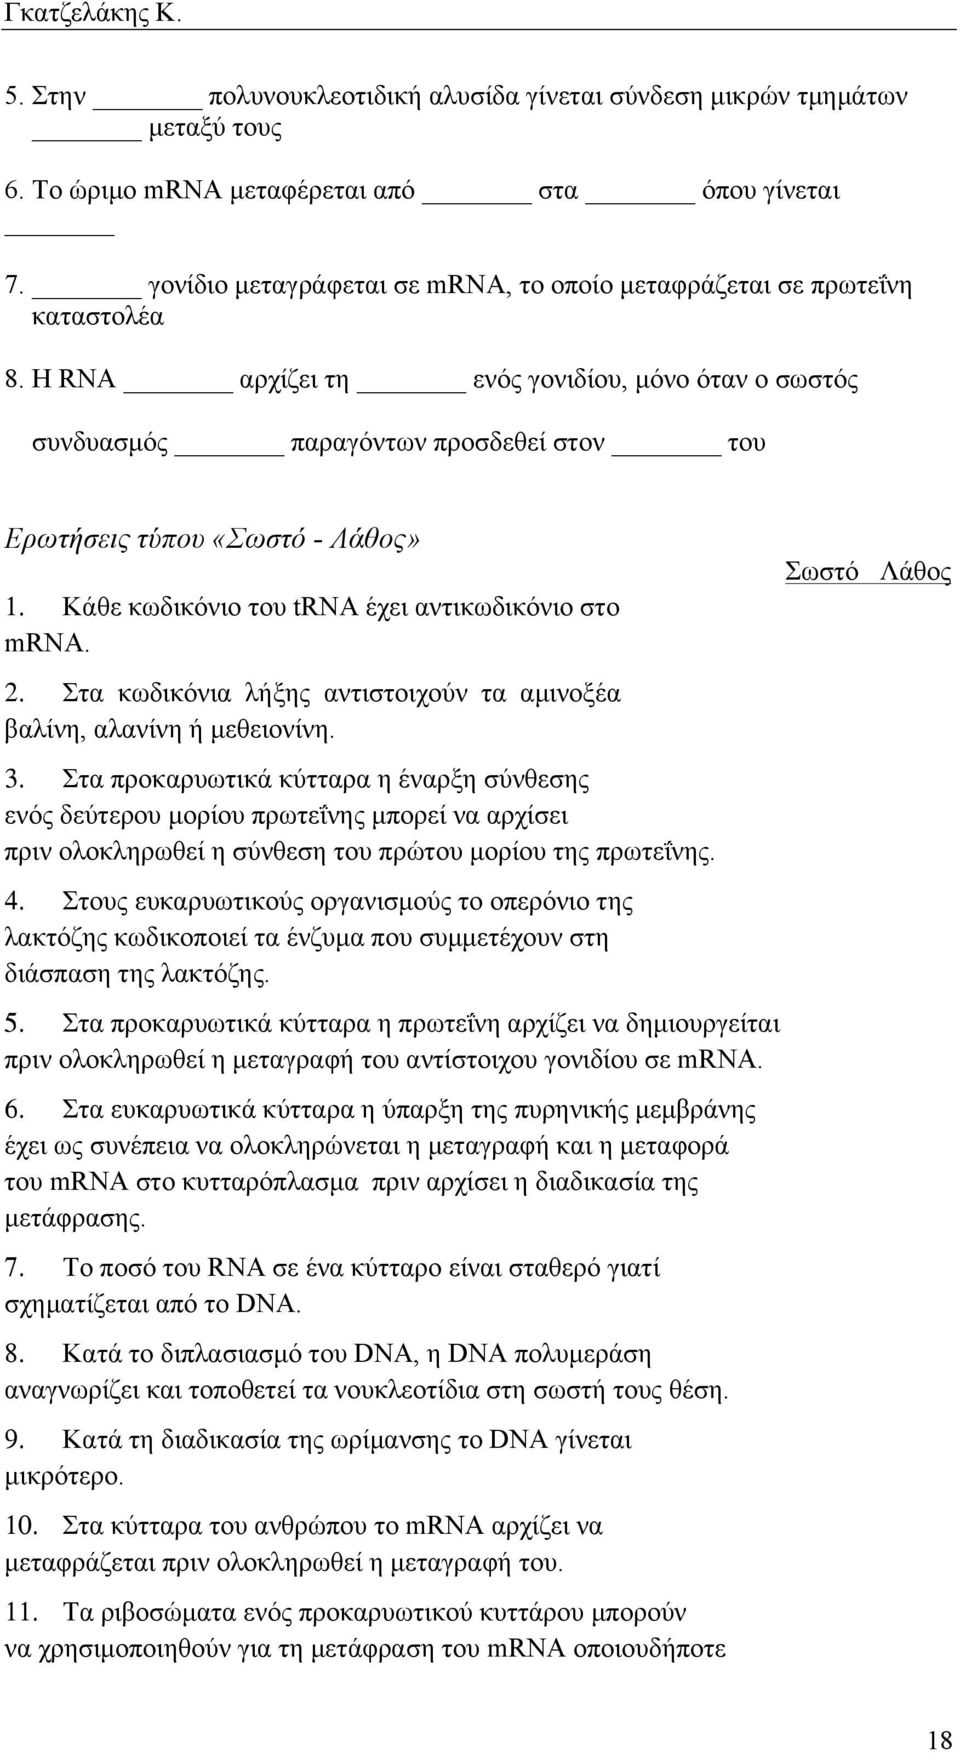 Η RNA αρχίζει τη ενός γονιδίου, µόνο όταν ο σωστός συνδυασµός παραγόντων προσδεθεί στον του Ερωτήσεις τύπου «Σωστό - Λάθος» 1. Κάθε κωδικόνιο του trνα έχει αντικωδικόνιο στο mrνα. 2.